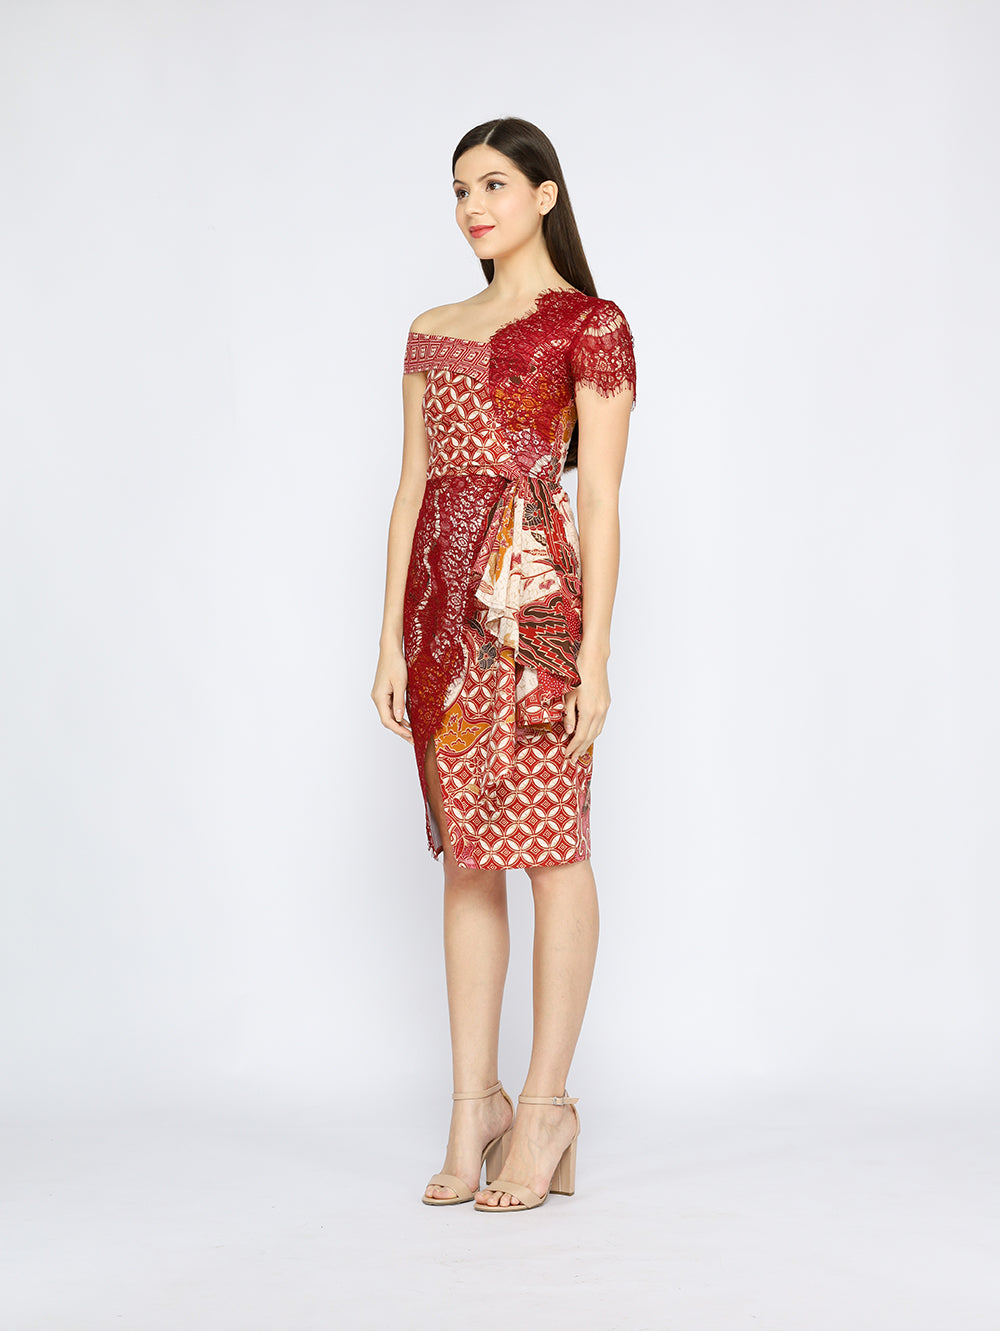 Dress Asymmetric Lace Batik